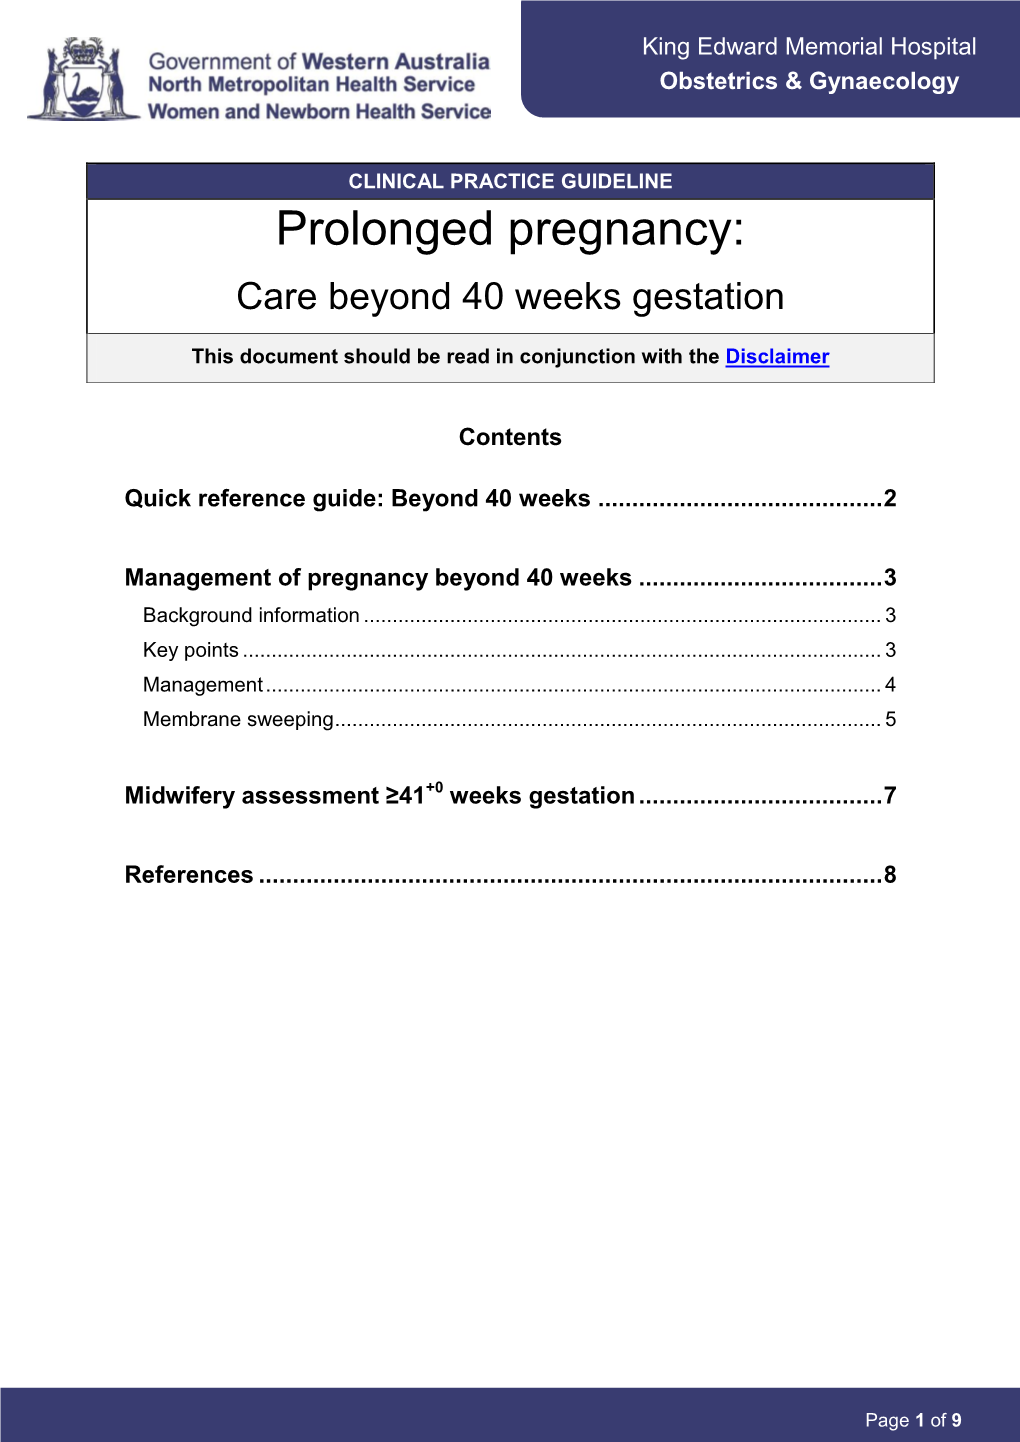 Prolonged Pregnancy: Care Beyond 40 Weeks Gestation